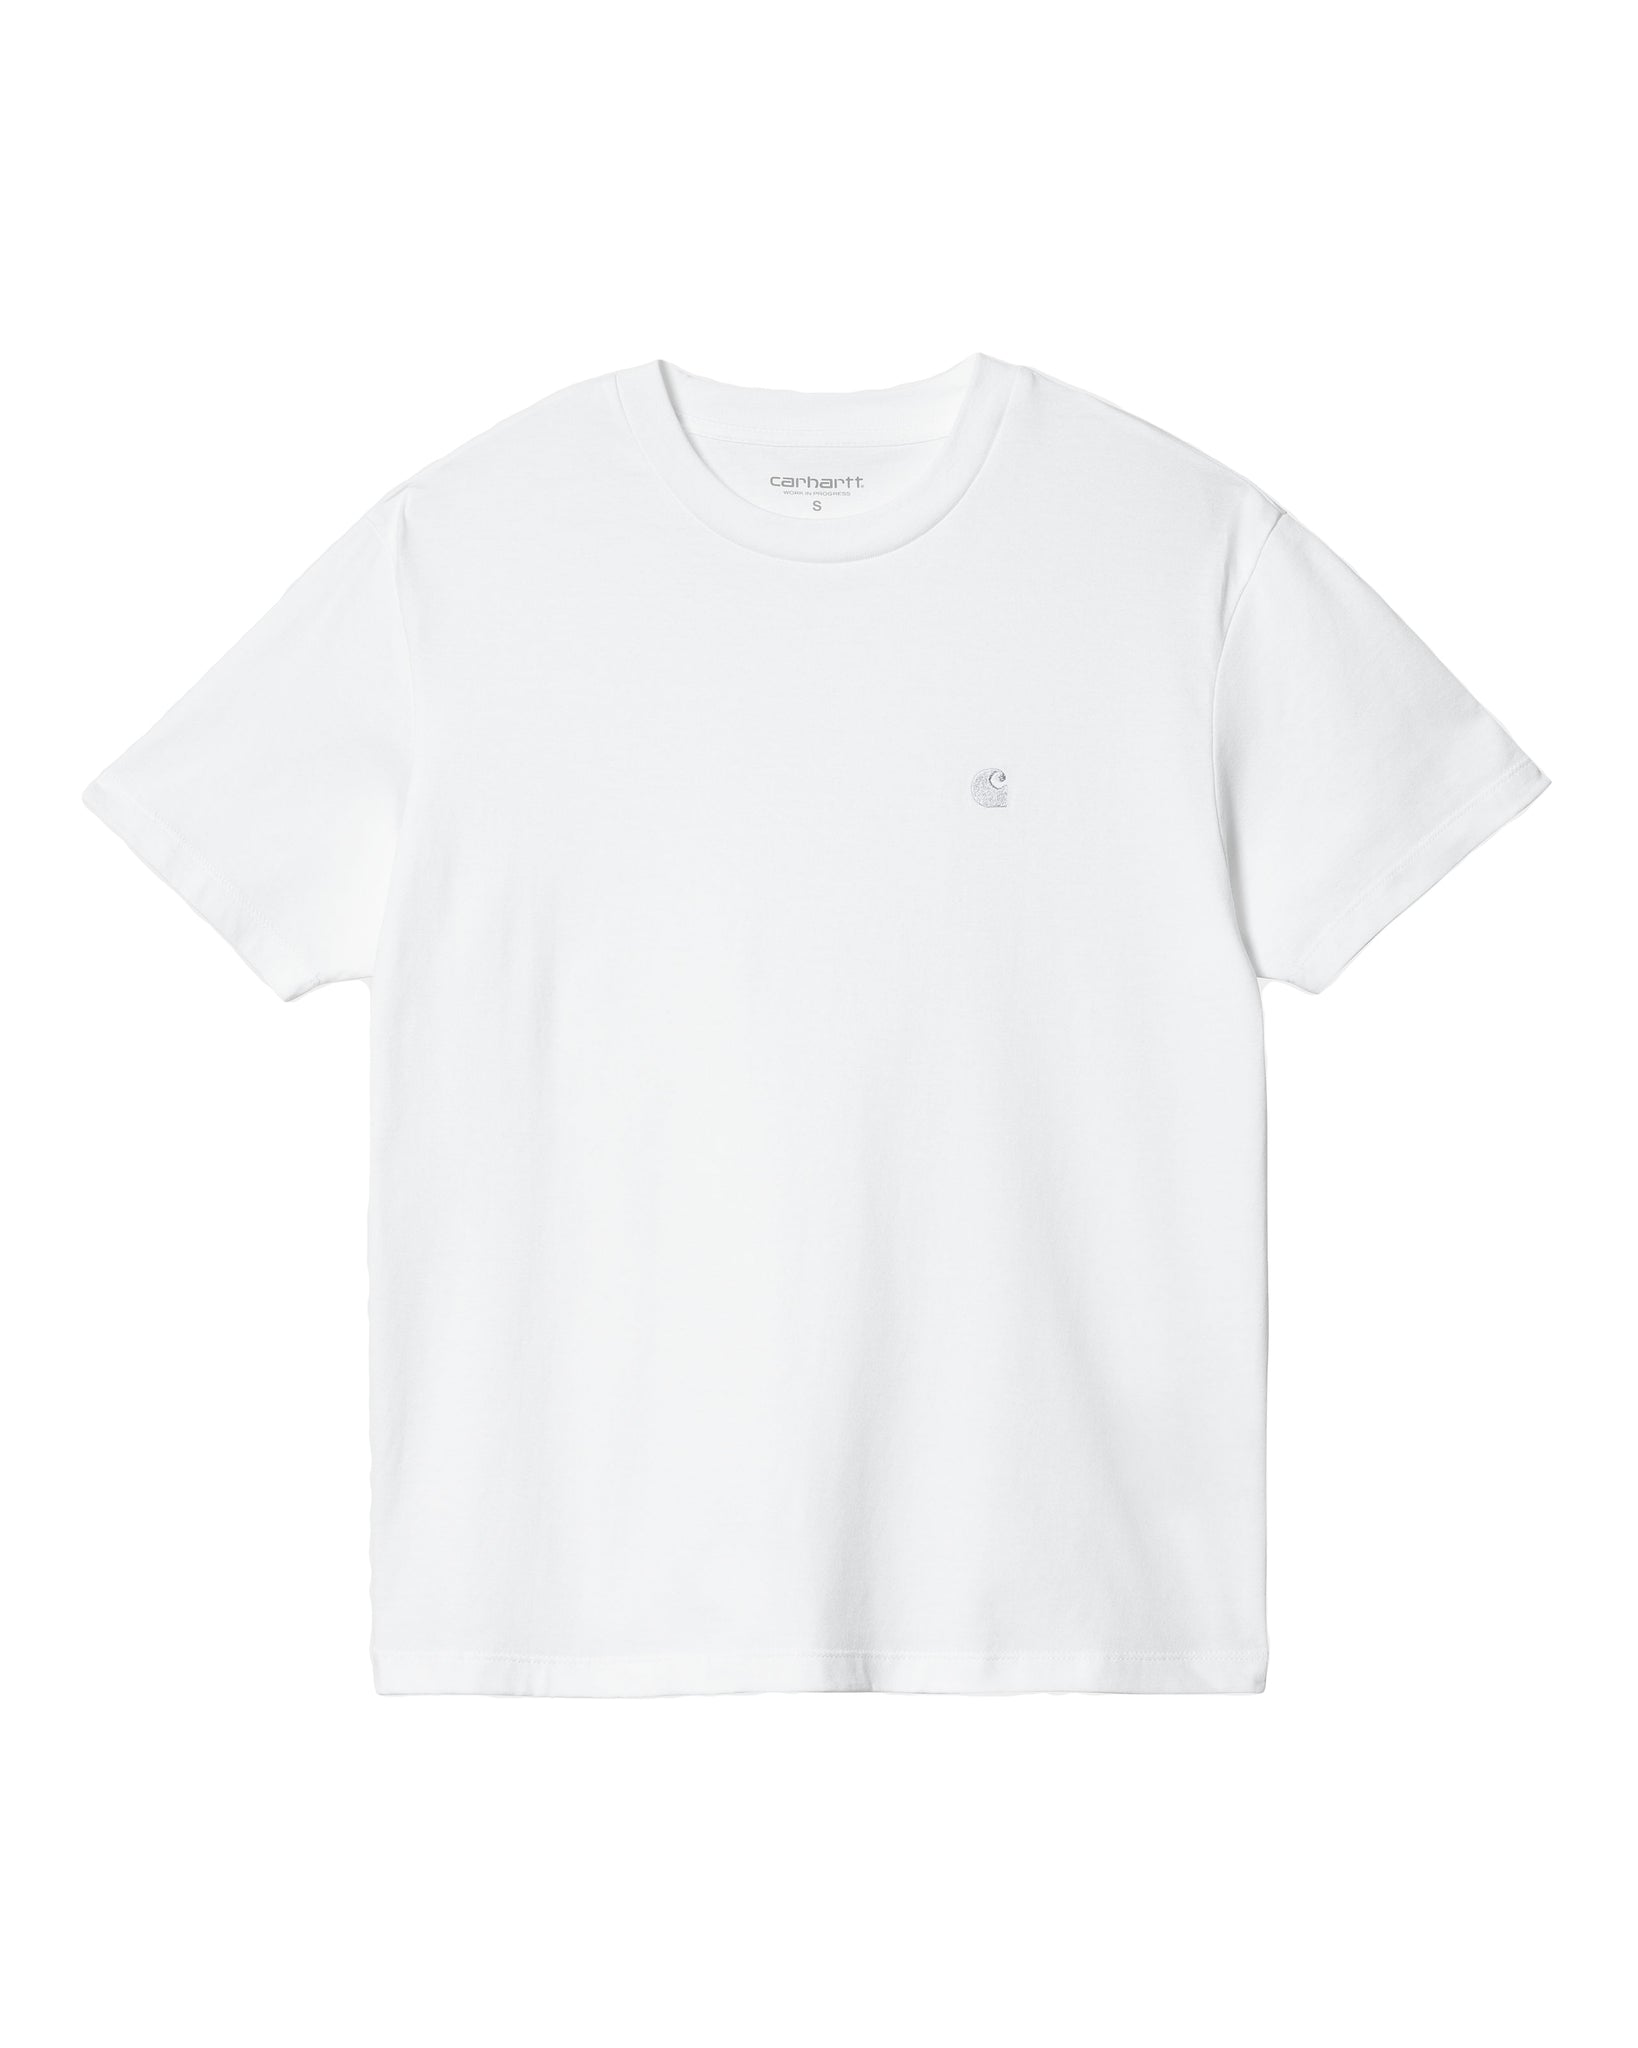 Camiseta W SS Casey - White/Silver